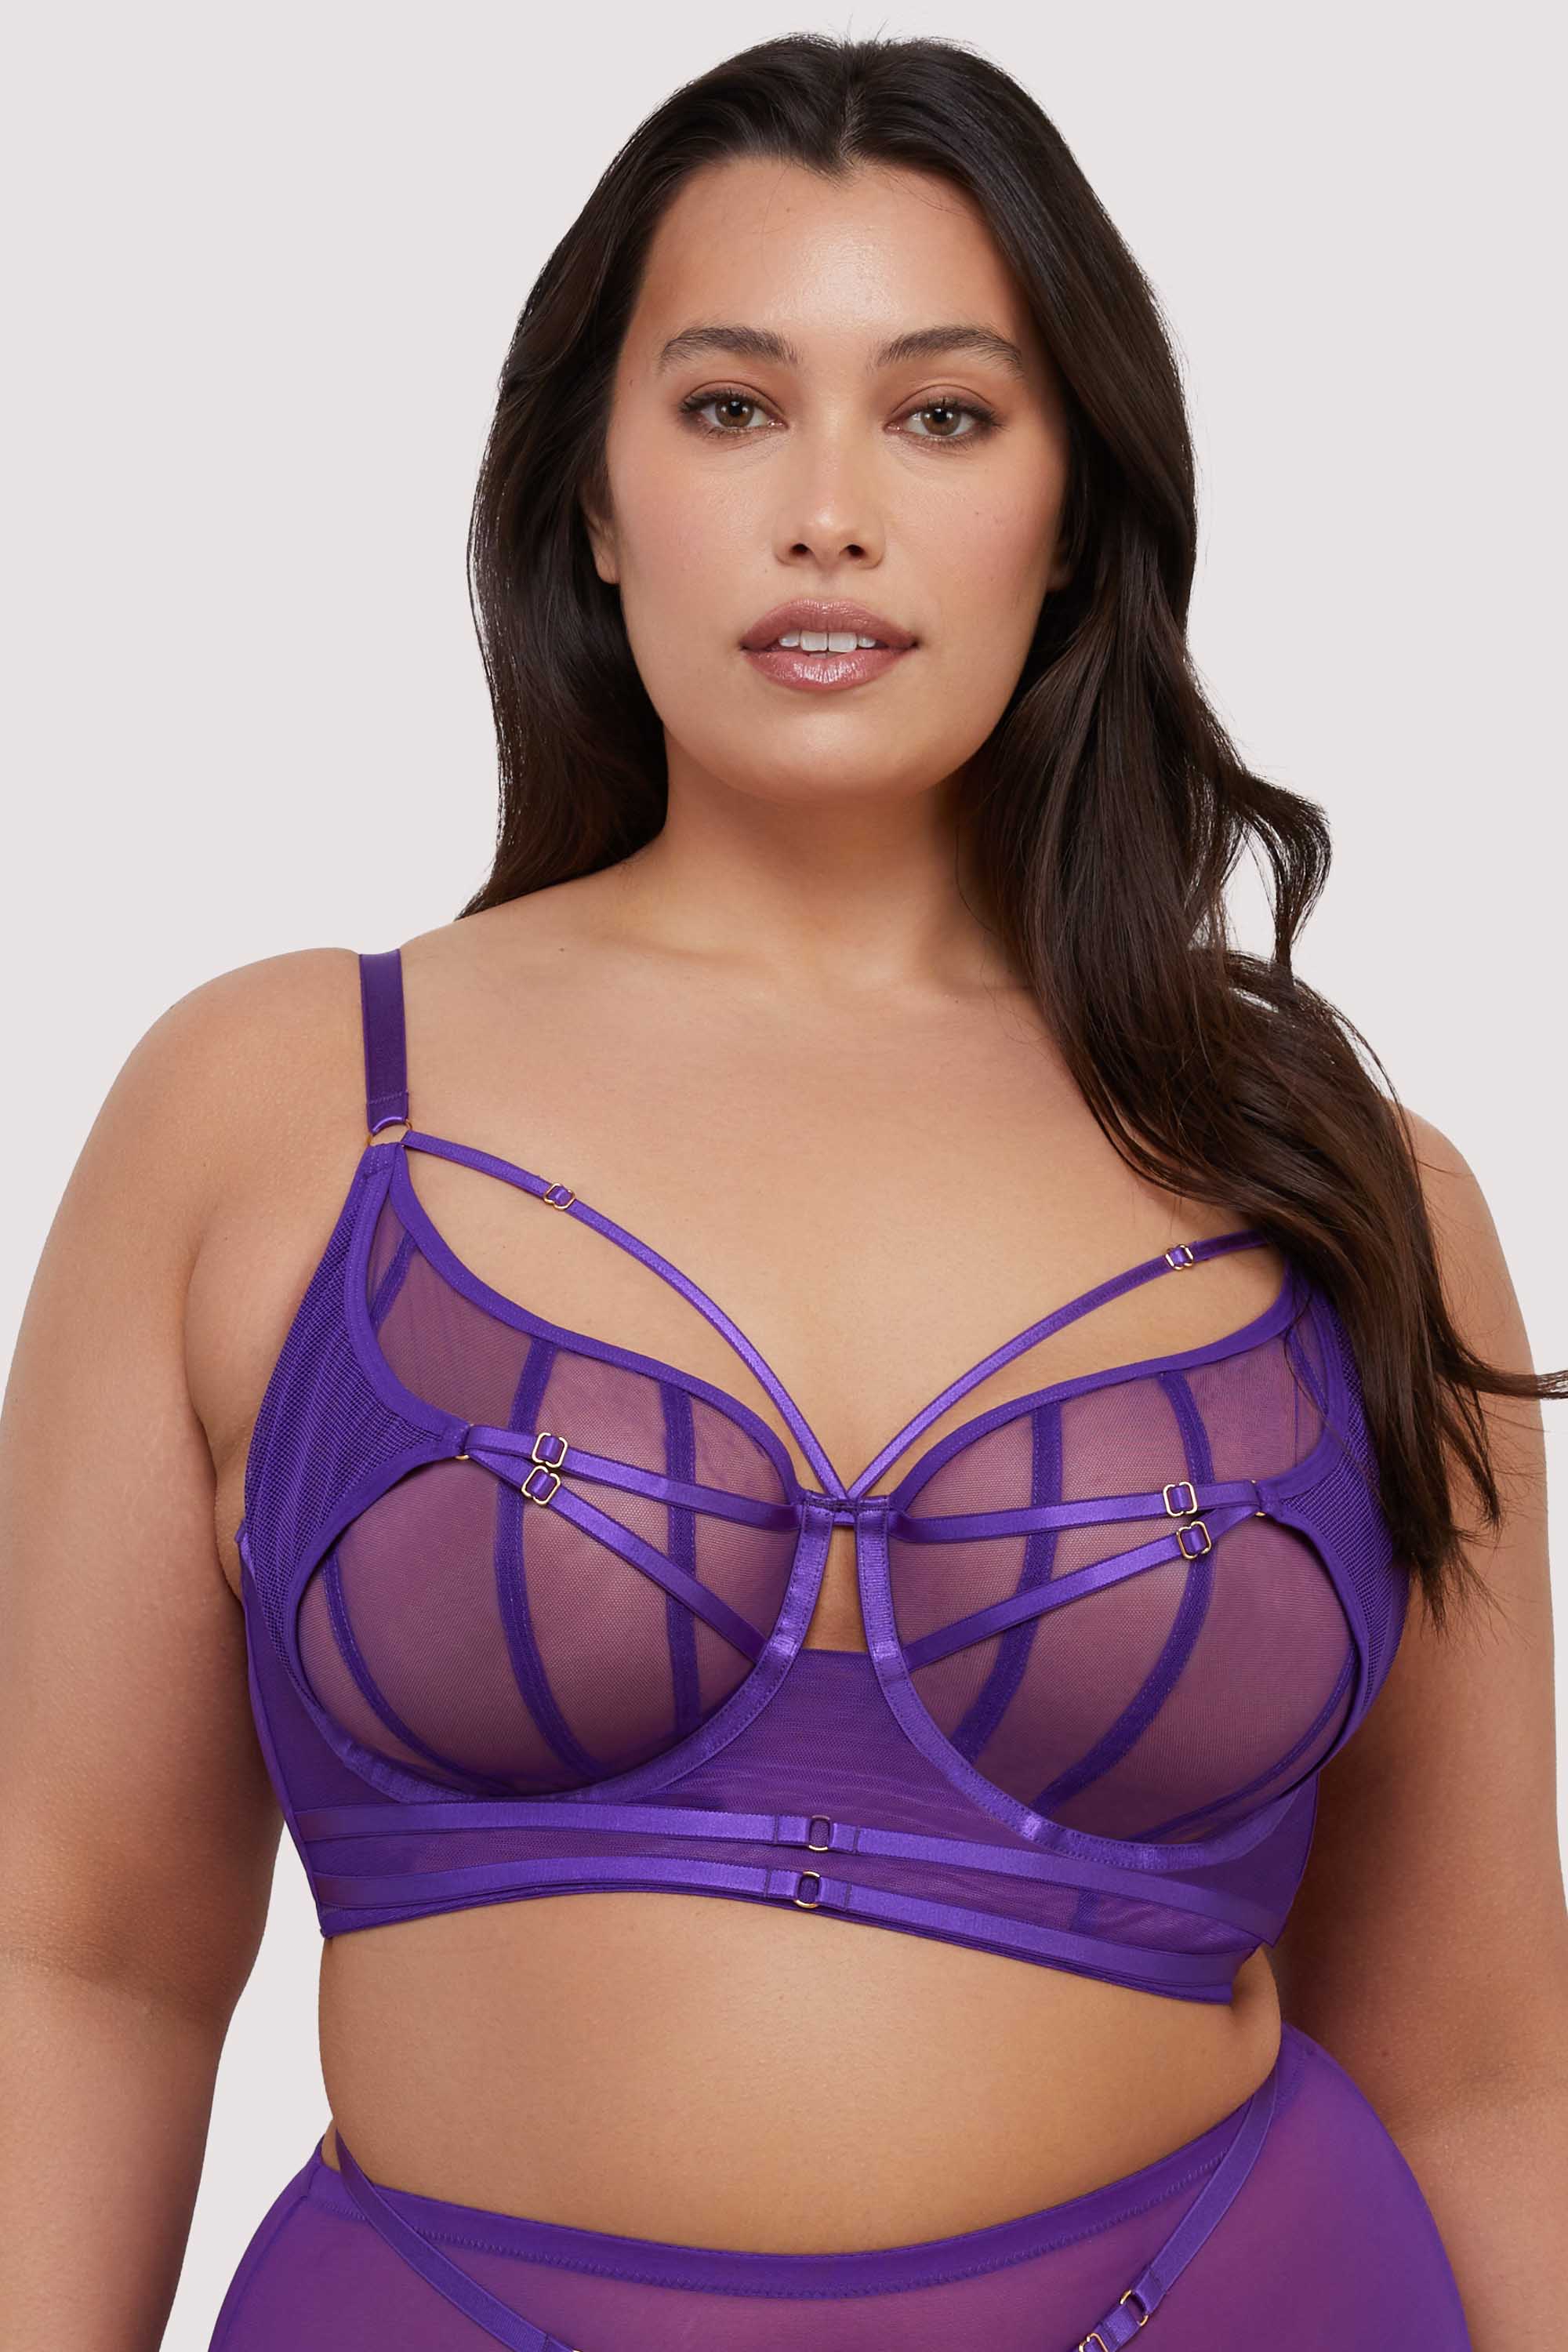 model wears purple mesh bra with straps